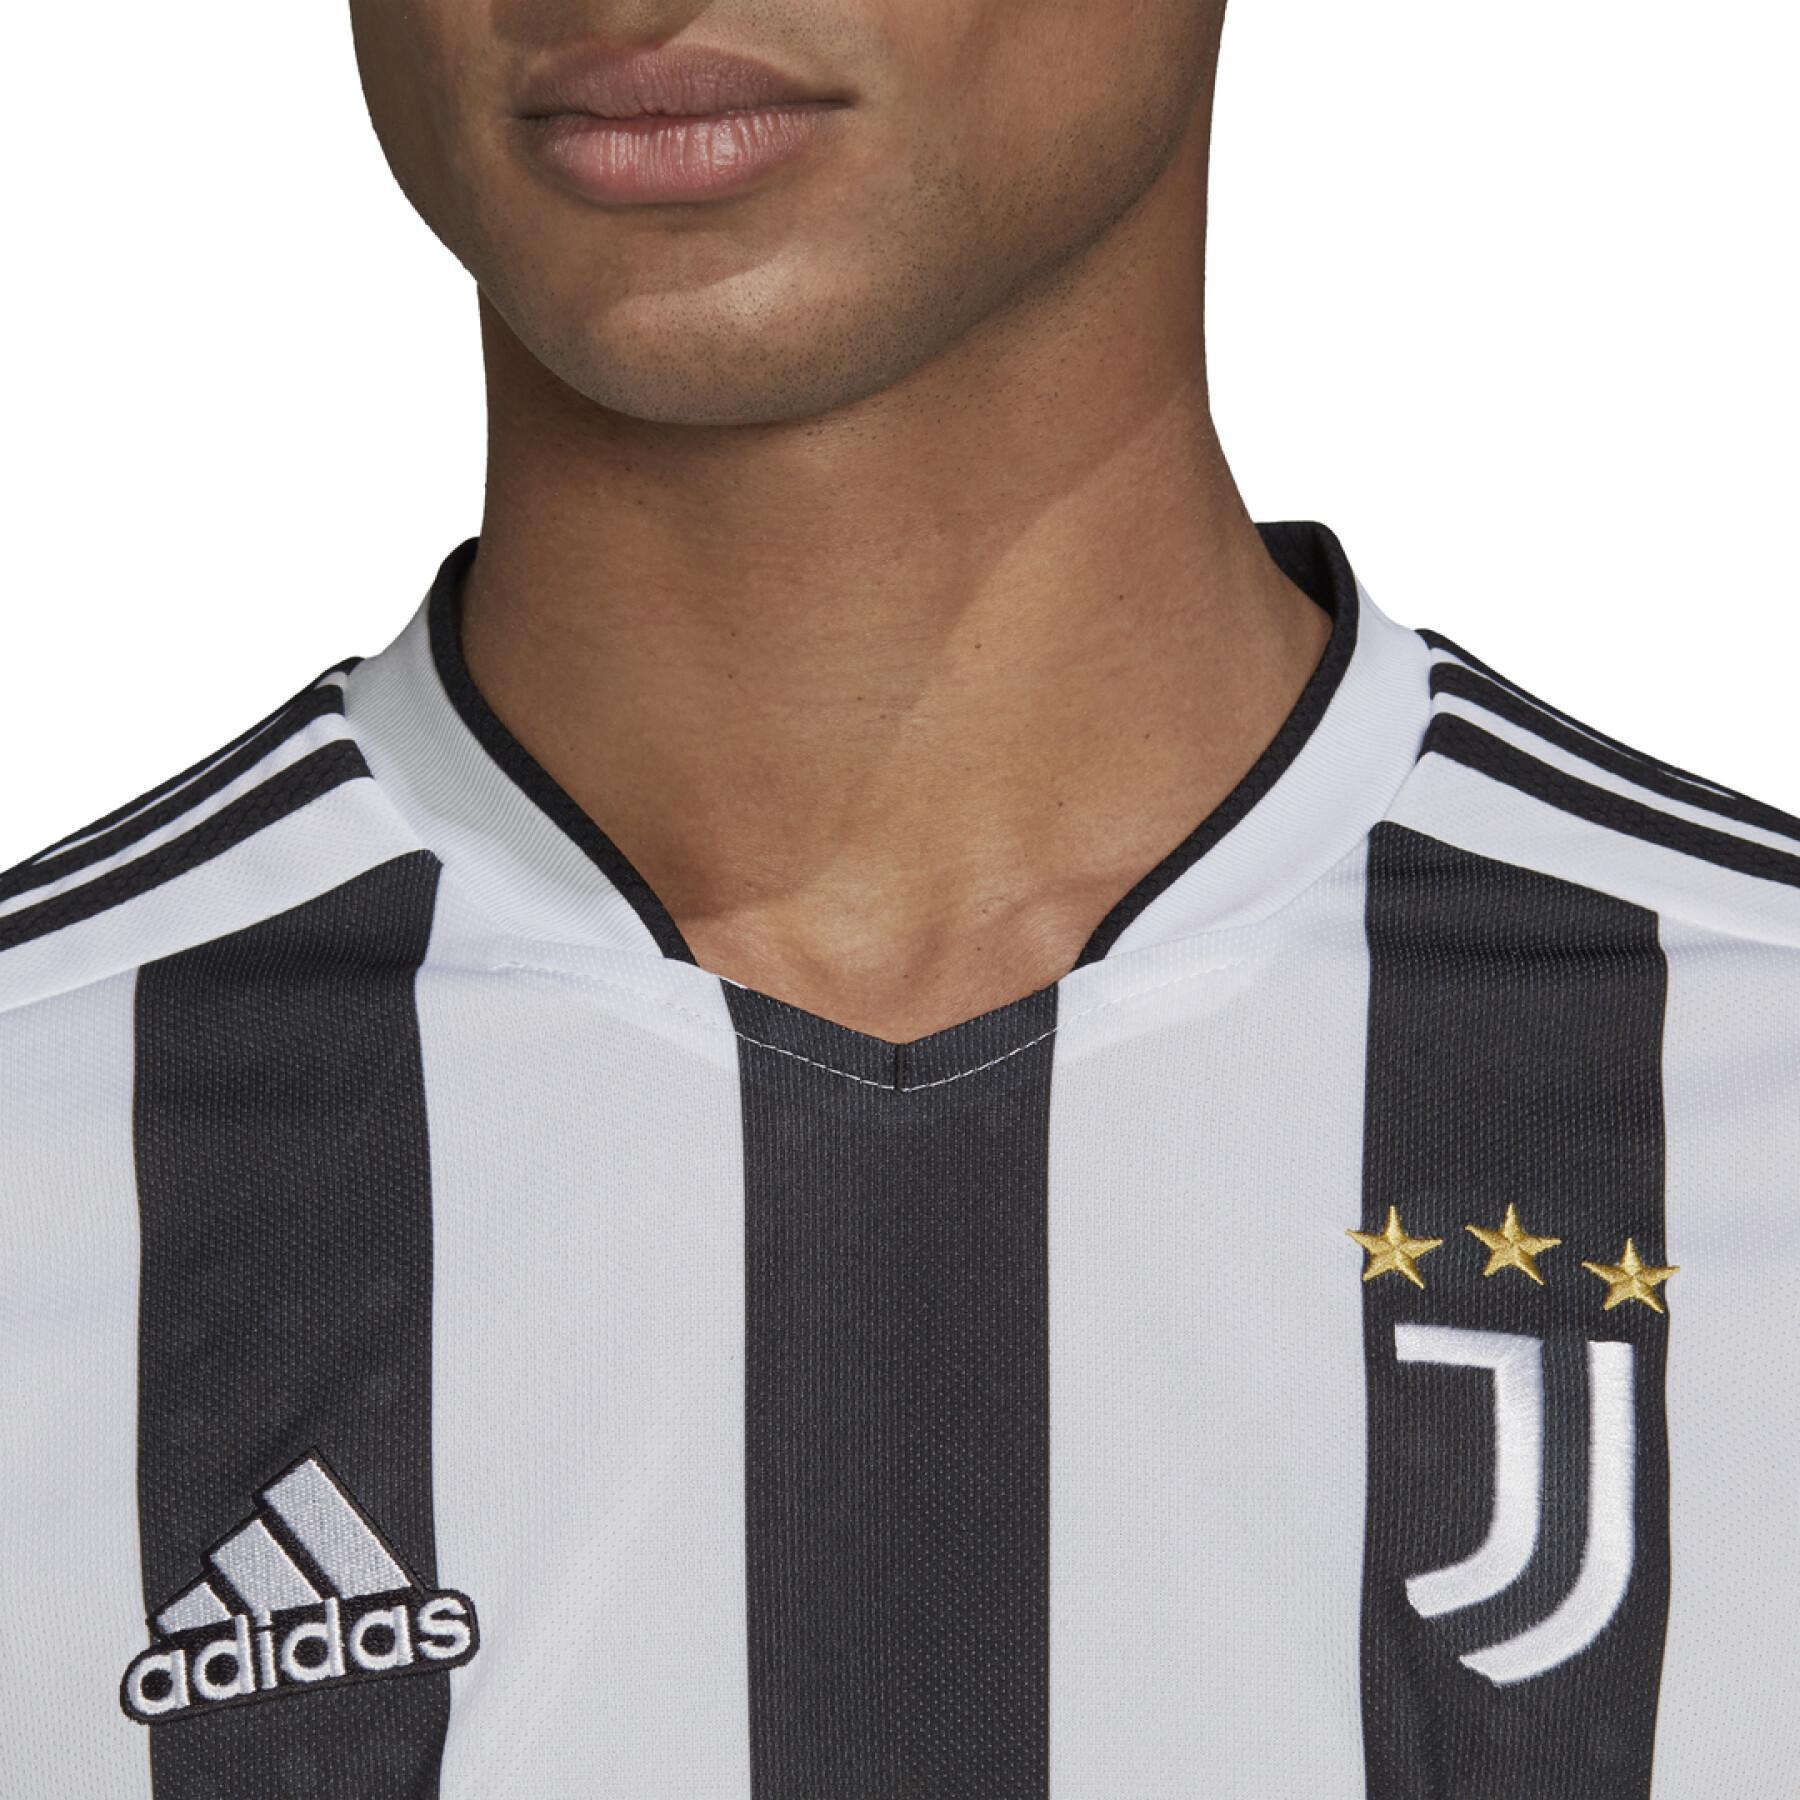 Camiseta de local Juventus 2021/22